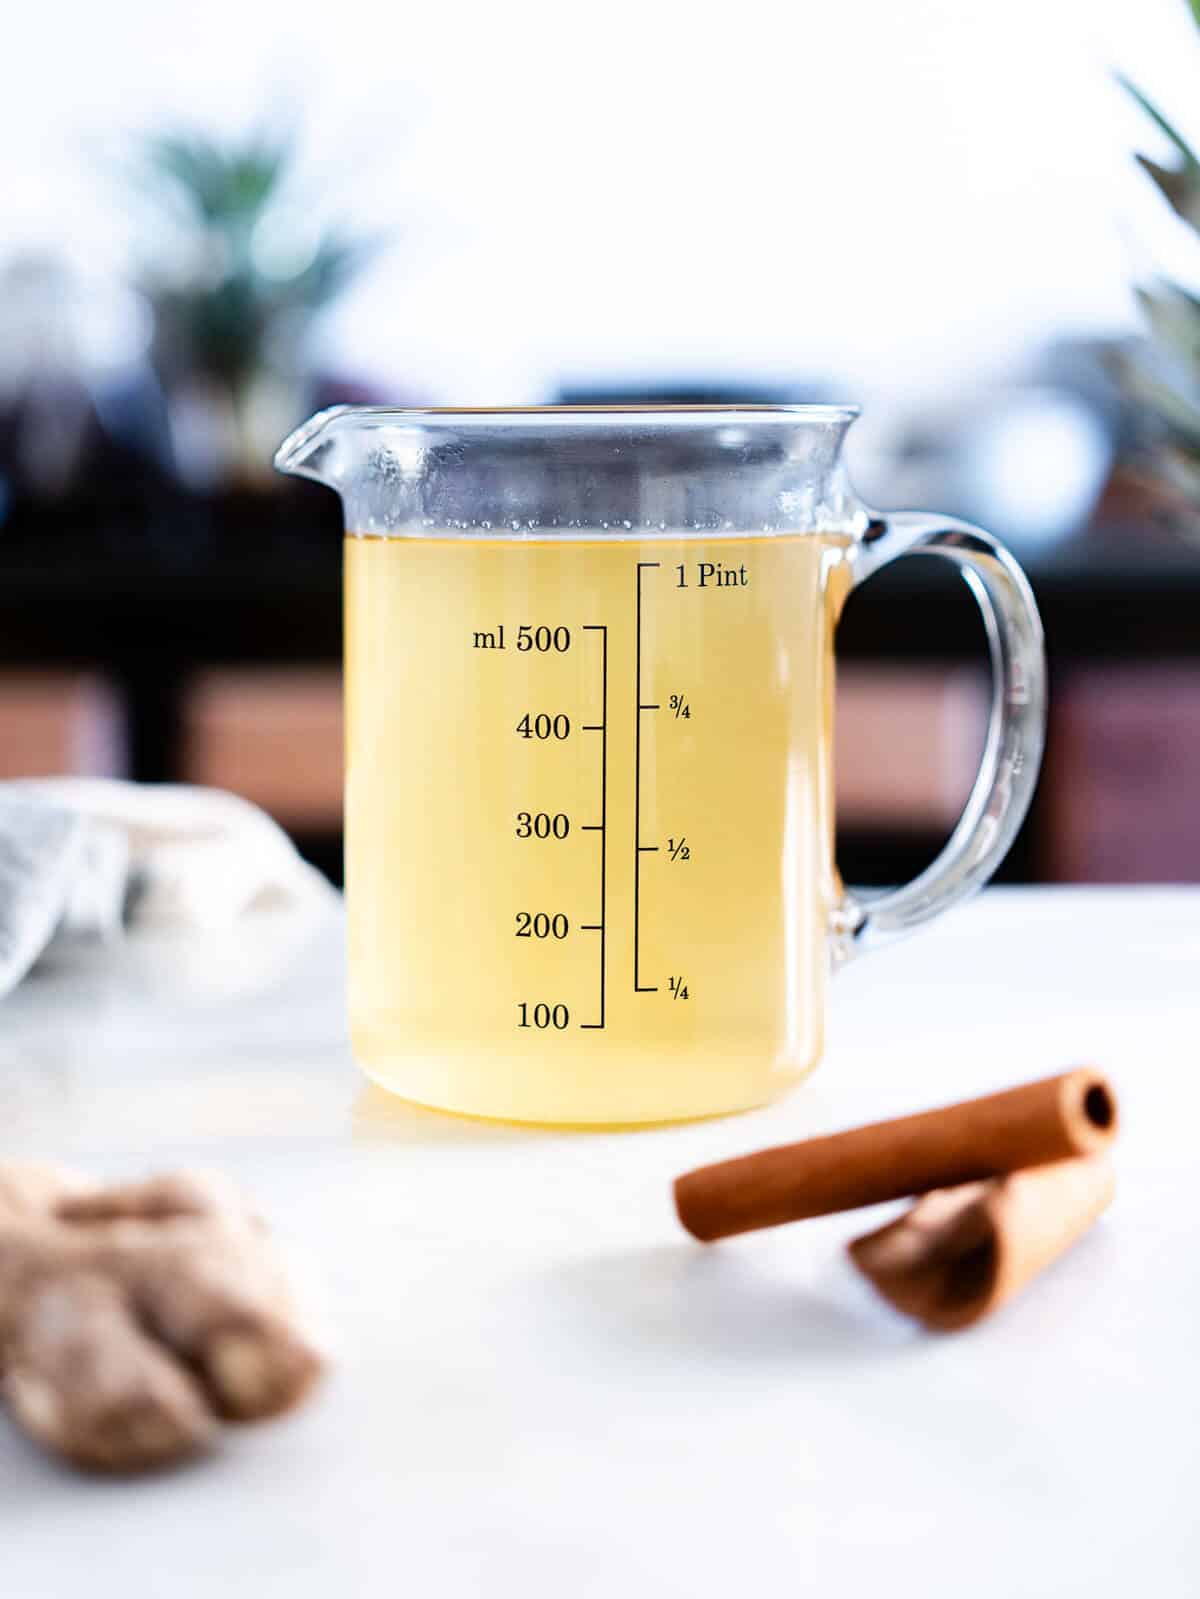 té de piña servido en una jarra pequeña.